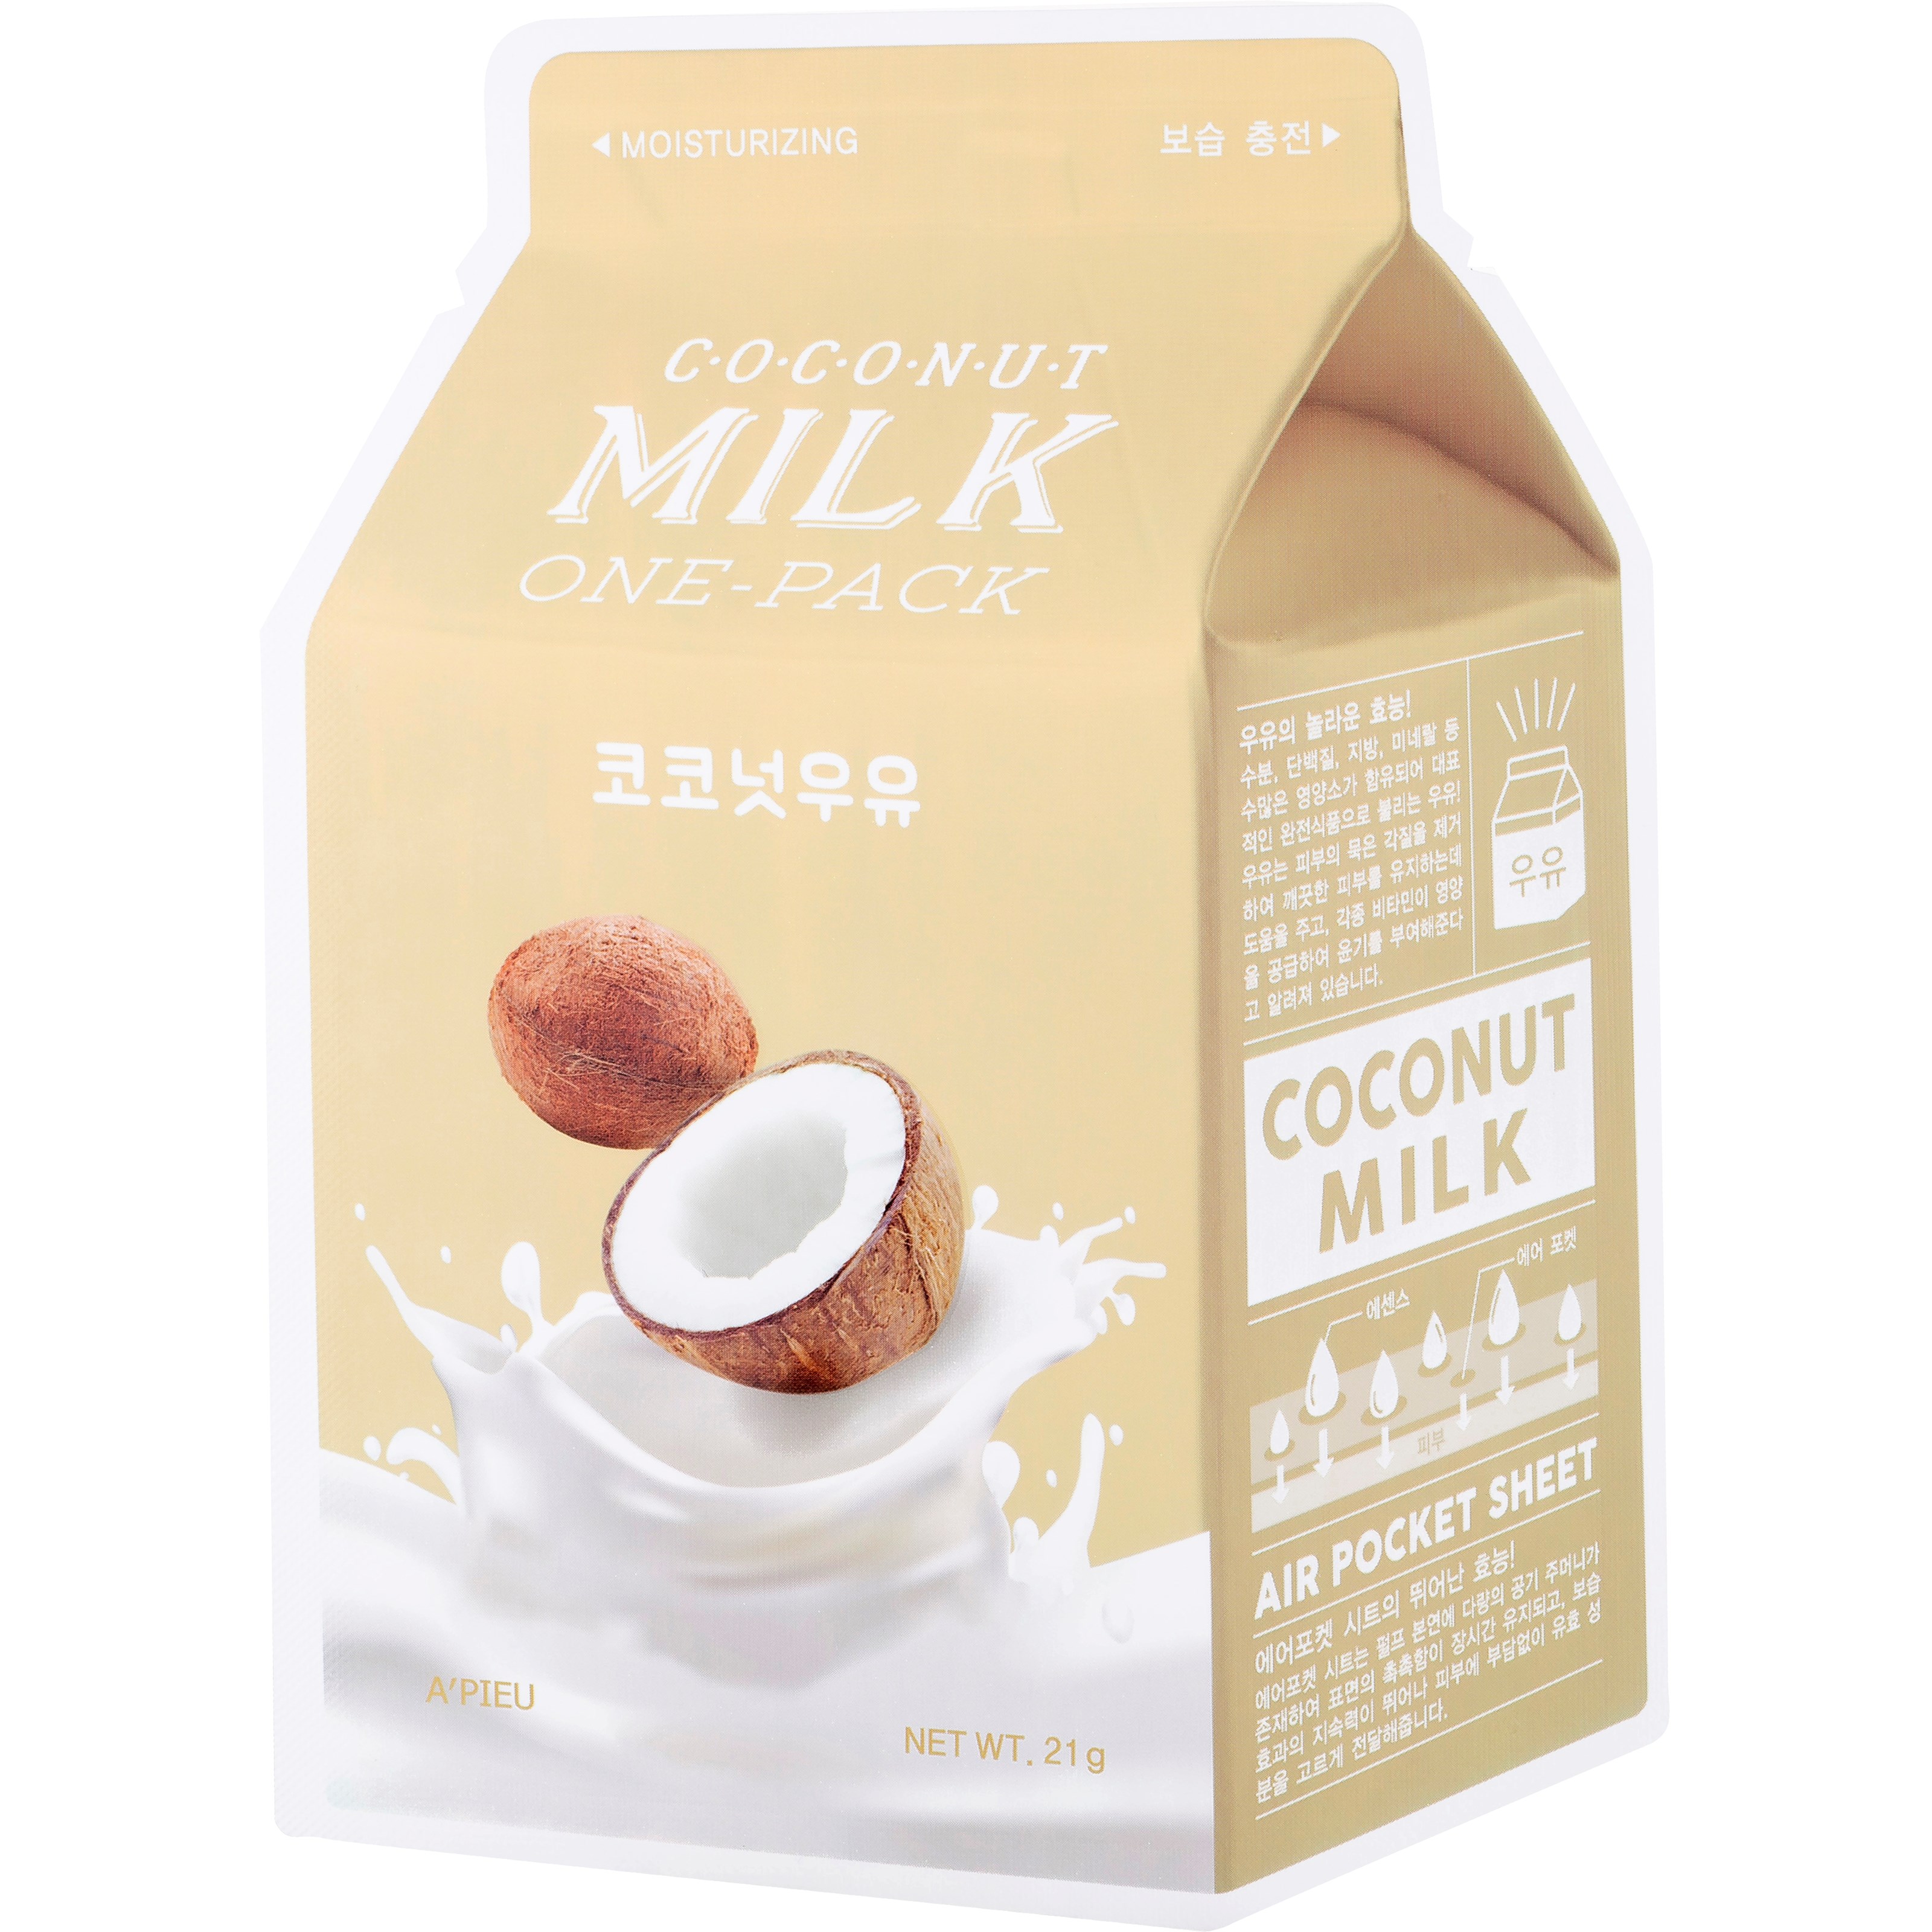 A'pieu Маска тканевая с молочными протеинами и экстрактом кокоса Coconut Milk One-Pack, 21 г